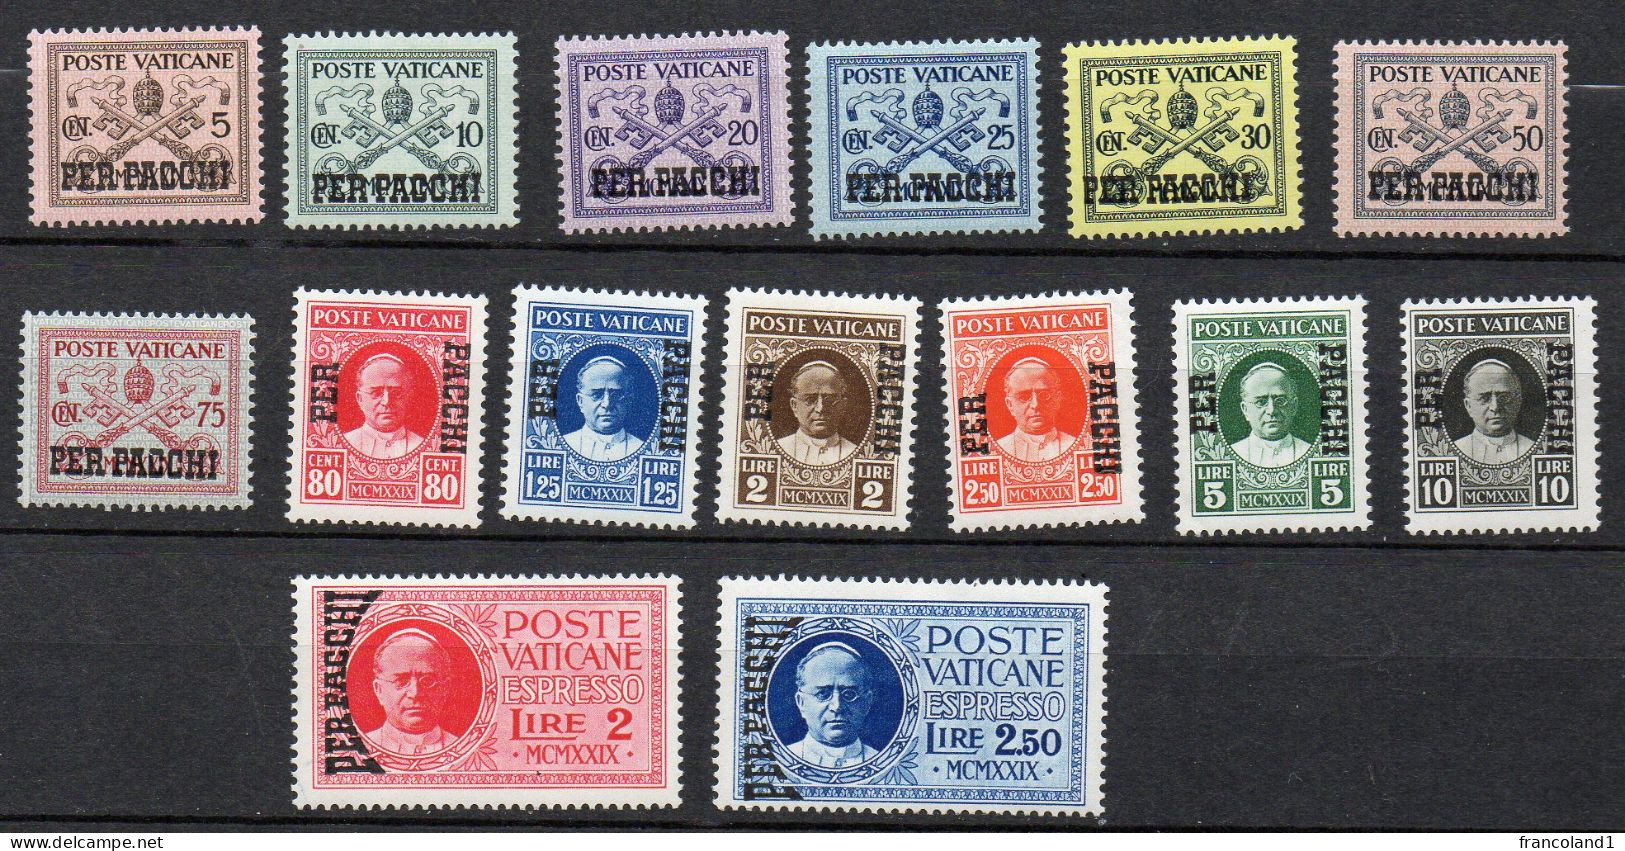 1931 Vaticano Pacchi Postali N. 1 - 15 Completa Con Espressi Serie Integra MNH** Sassone 150 Euro - Paketmarken